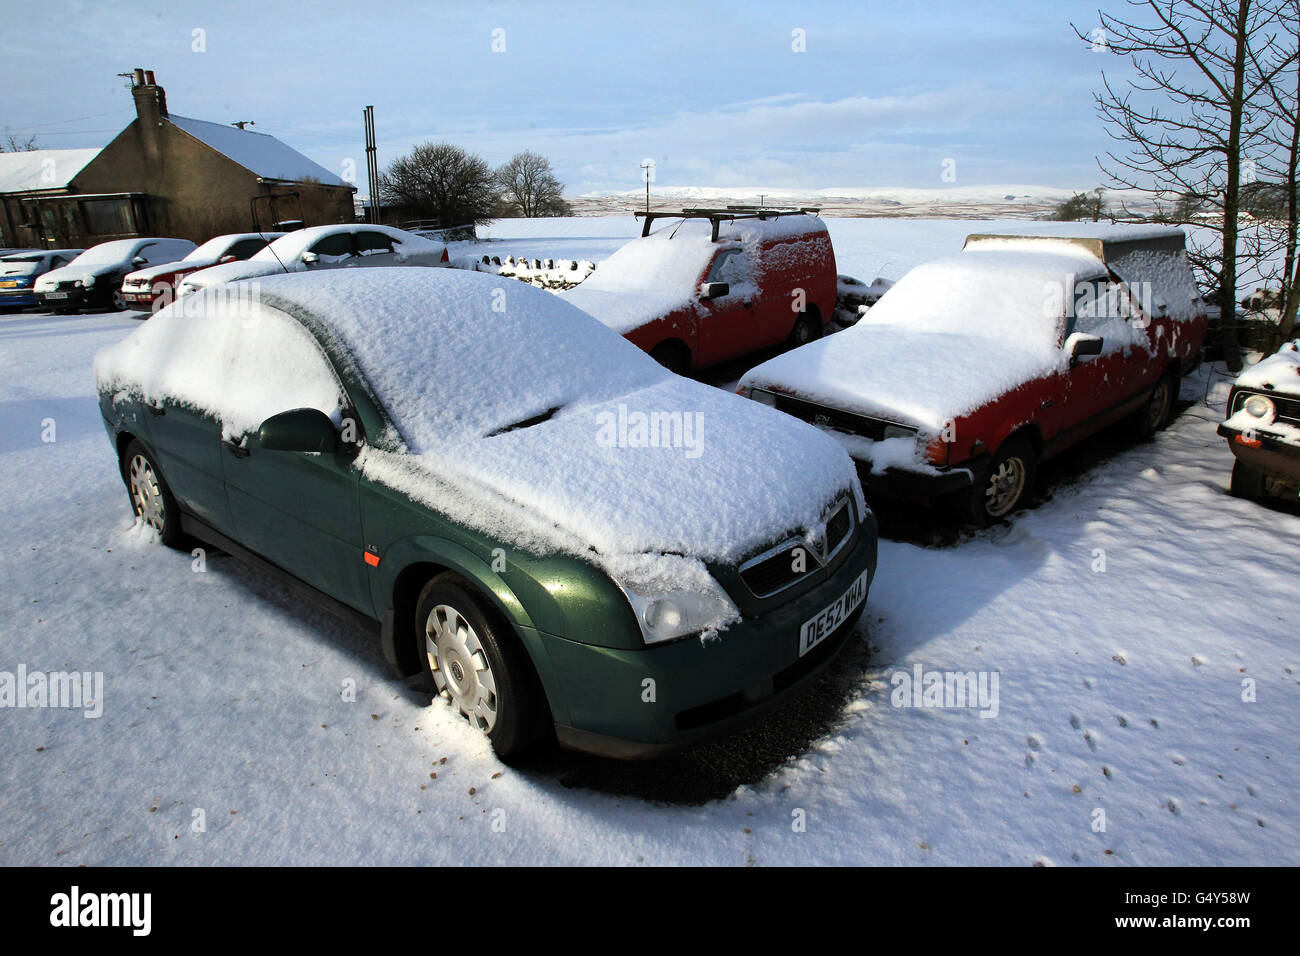 Les voitures sont couvertes de neige à Shap, en Cumbria, alors qu'une grande partie de la Grande-Bretagne s'est réveillée sur une couverture de neige après que le grand gel ait entraîné des dénivelés de 16 cm, des avions au sol et causé des perturbations sur les routes et les chemins de fer. Banque D'Images